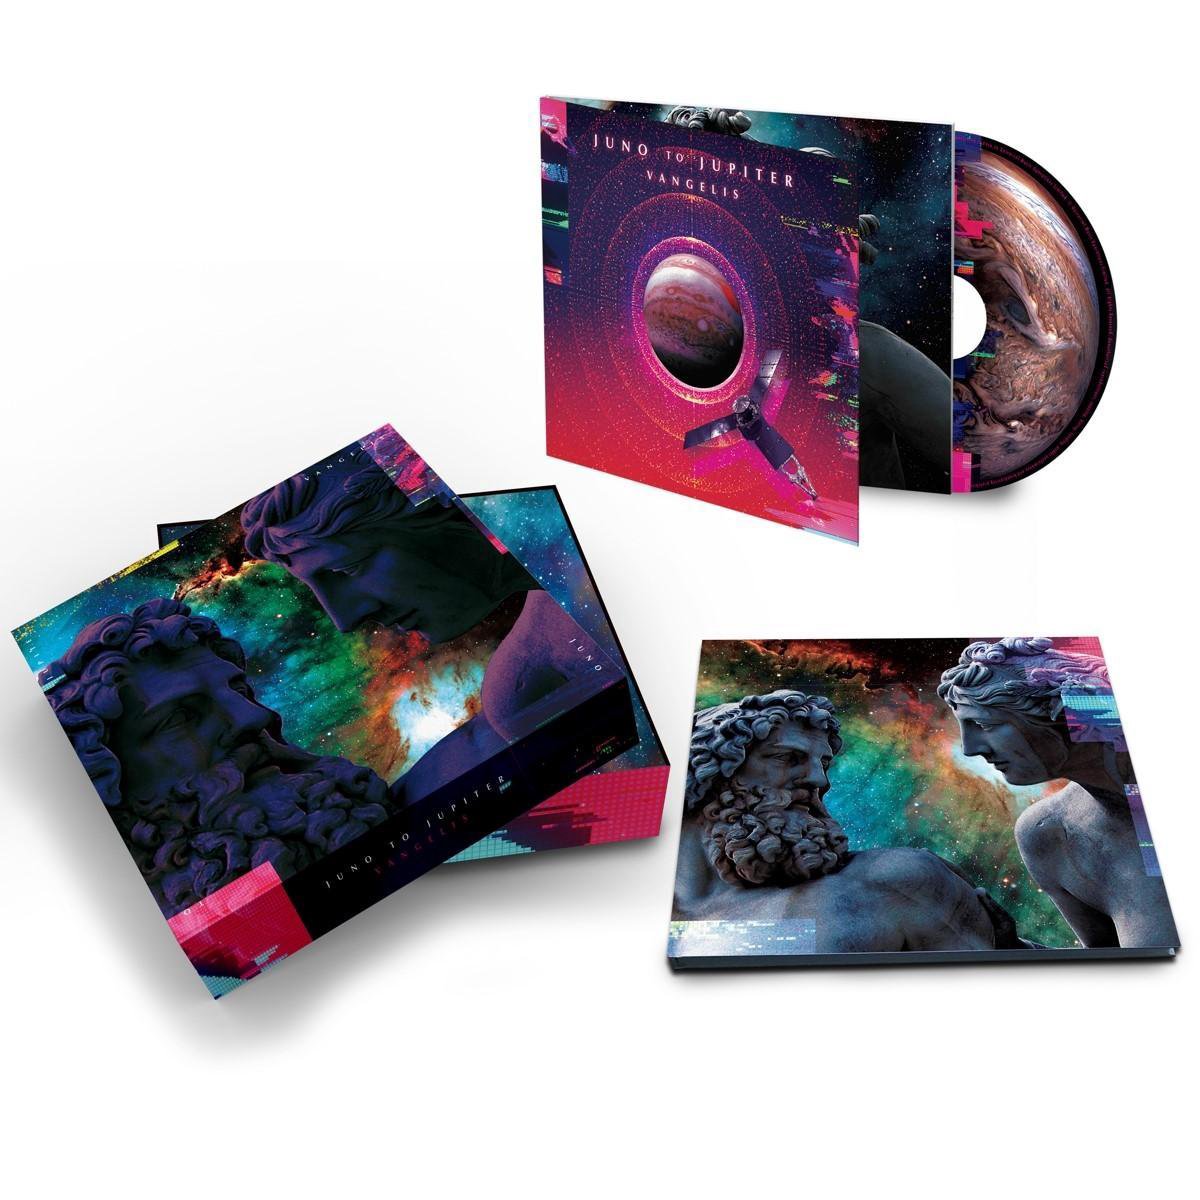 Vangelis - Juno To Jupiter (CD) - Vangelis